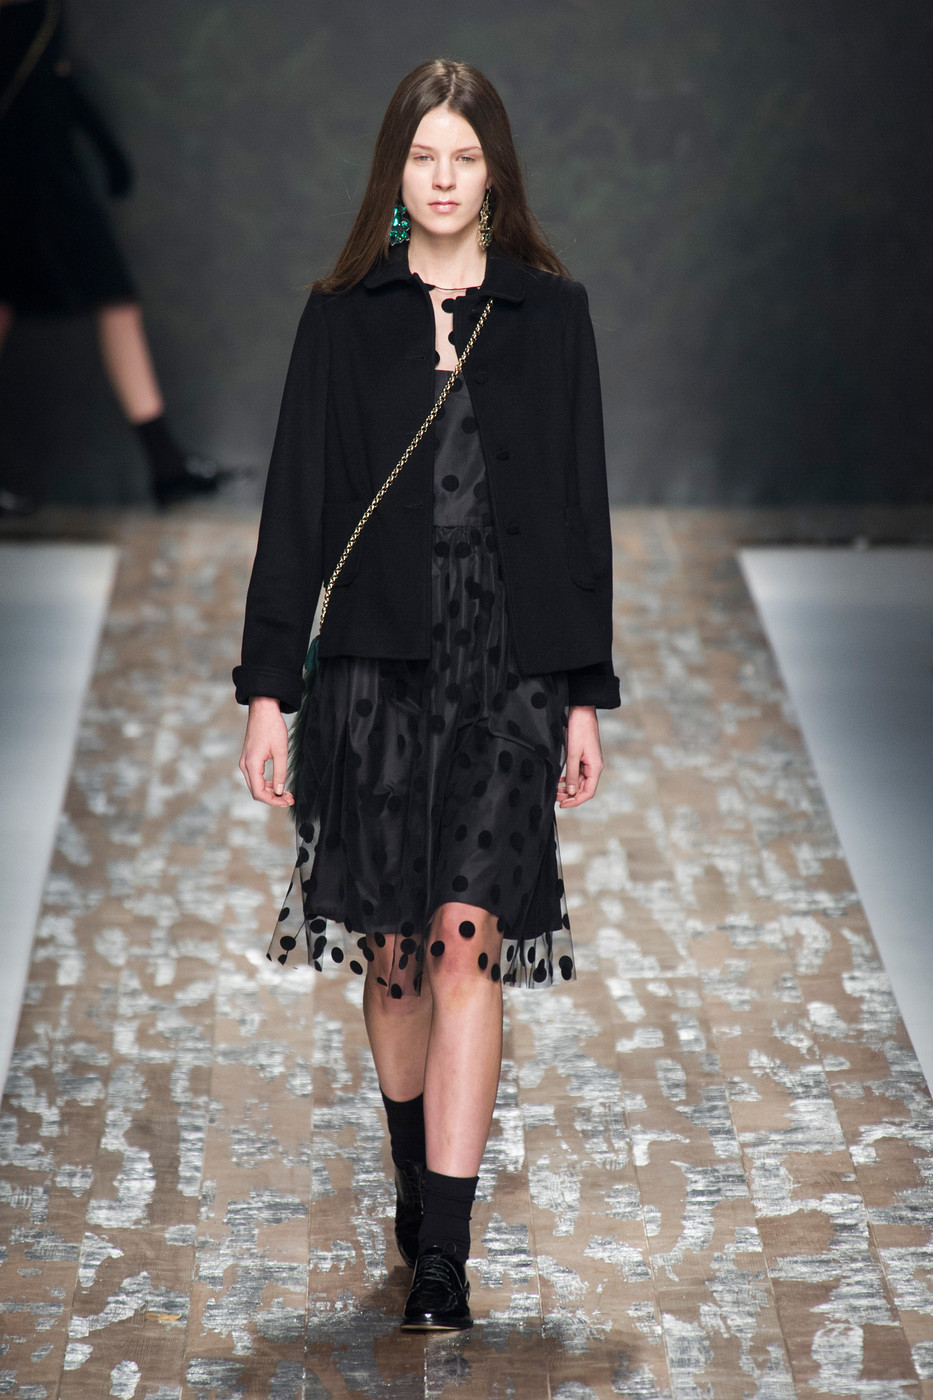 mode models blog: Kayley walks Blugirl Fall 2013 at Milan Fashion Week